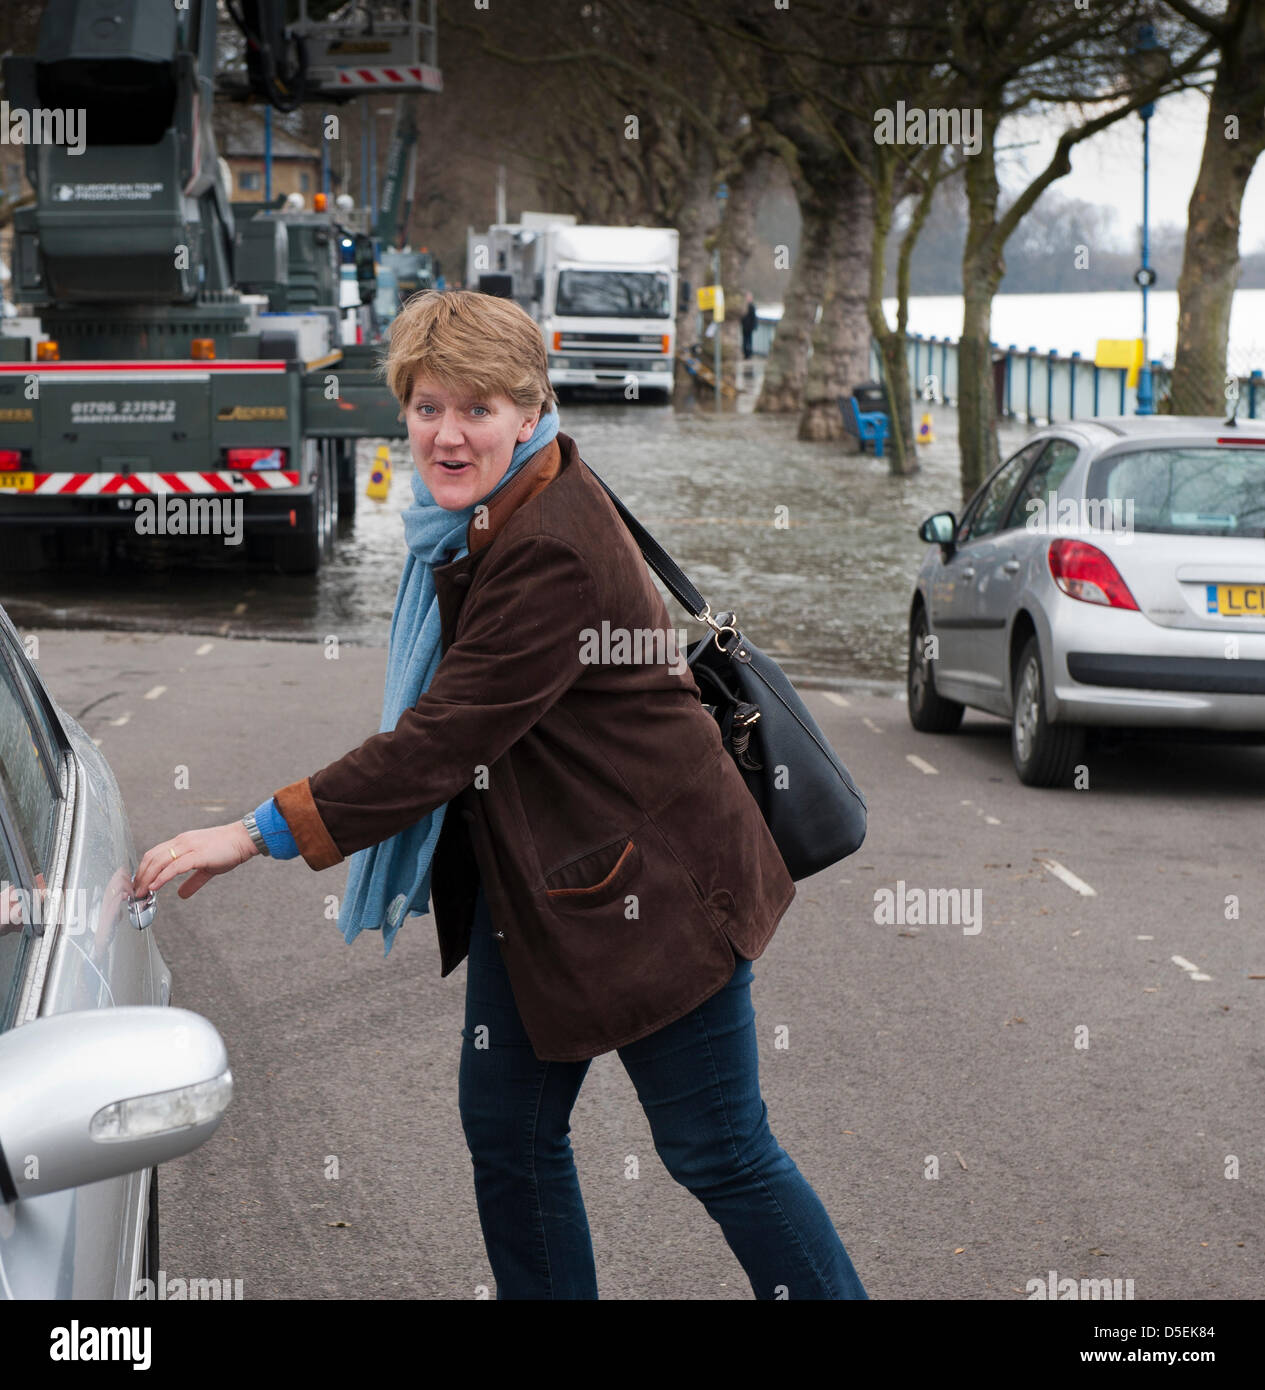 London, UK. 30. März 2013. Clare Balding BBC Sport-Moderator, Gerät in ein Auto am Putney nach dem Auschecken die Überschwemmung der Themse, am Tages vor der Regatta. Praxis Samstag für Besatzungen und Medien. Stockfoto